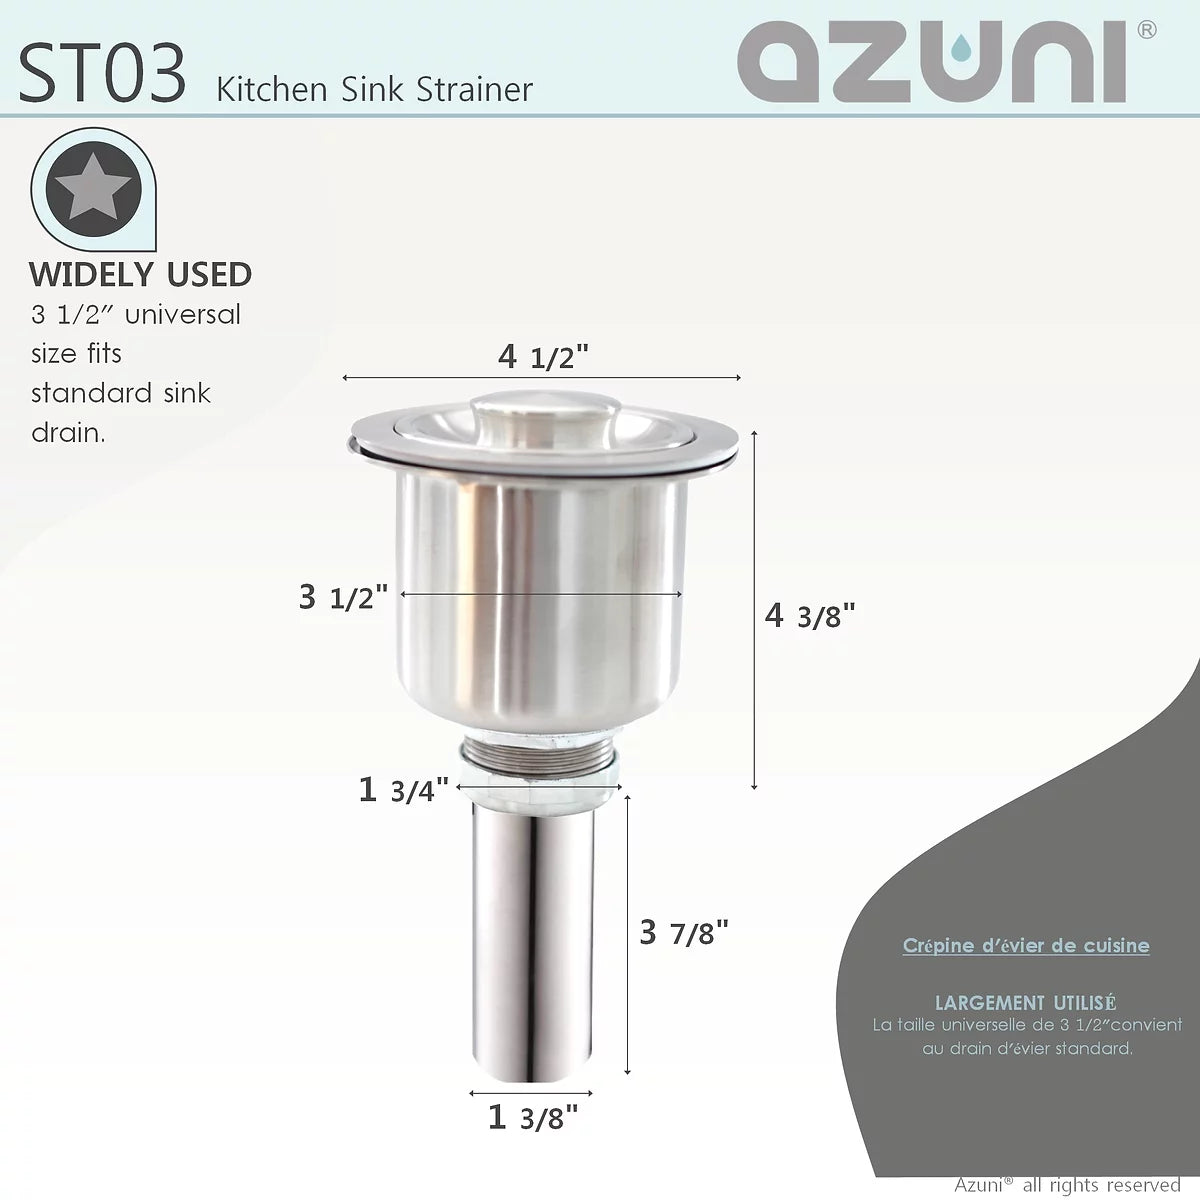 Azuni Luxury Baset Stainless Steel Kitchen Sink Strainer ST03